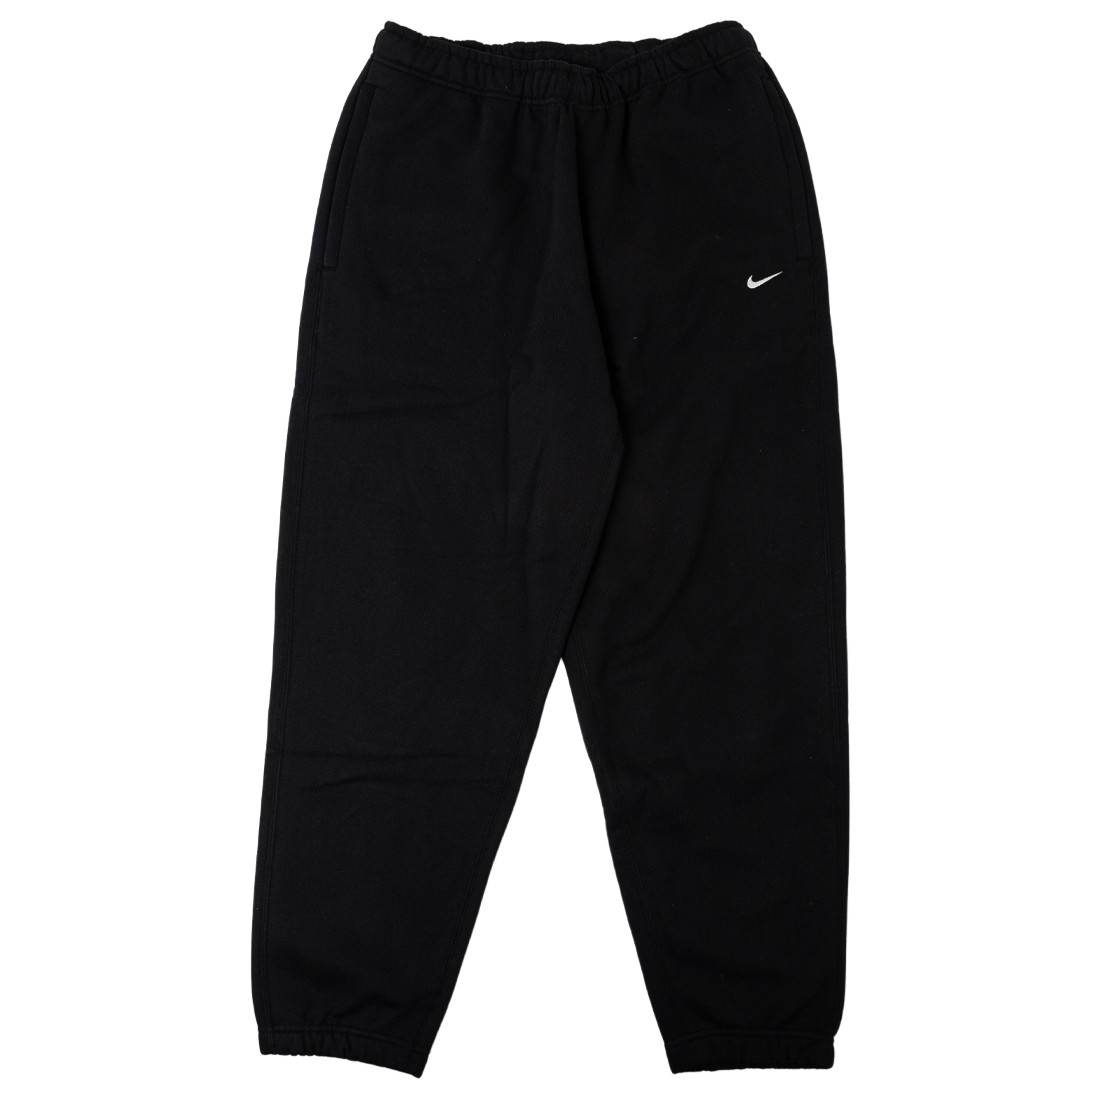 Nike Swoosh Air joggers in black | ASOS